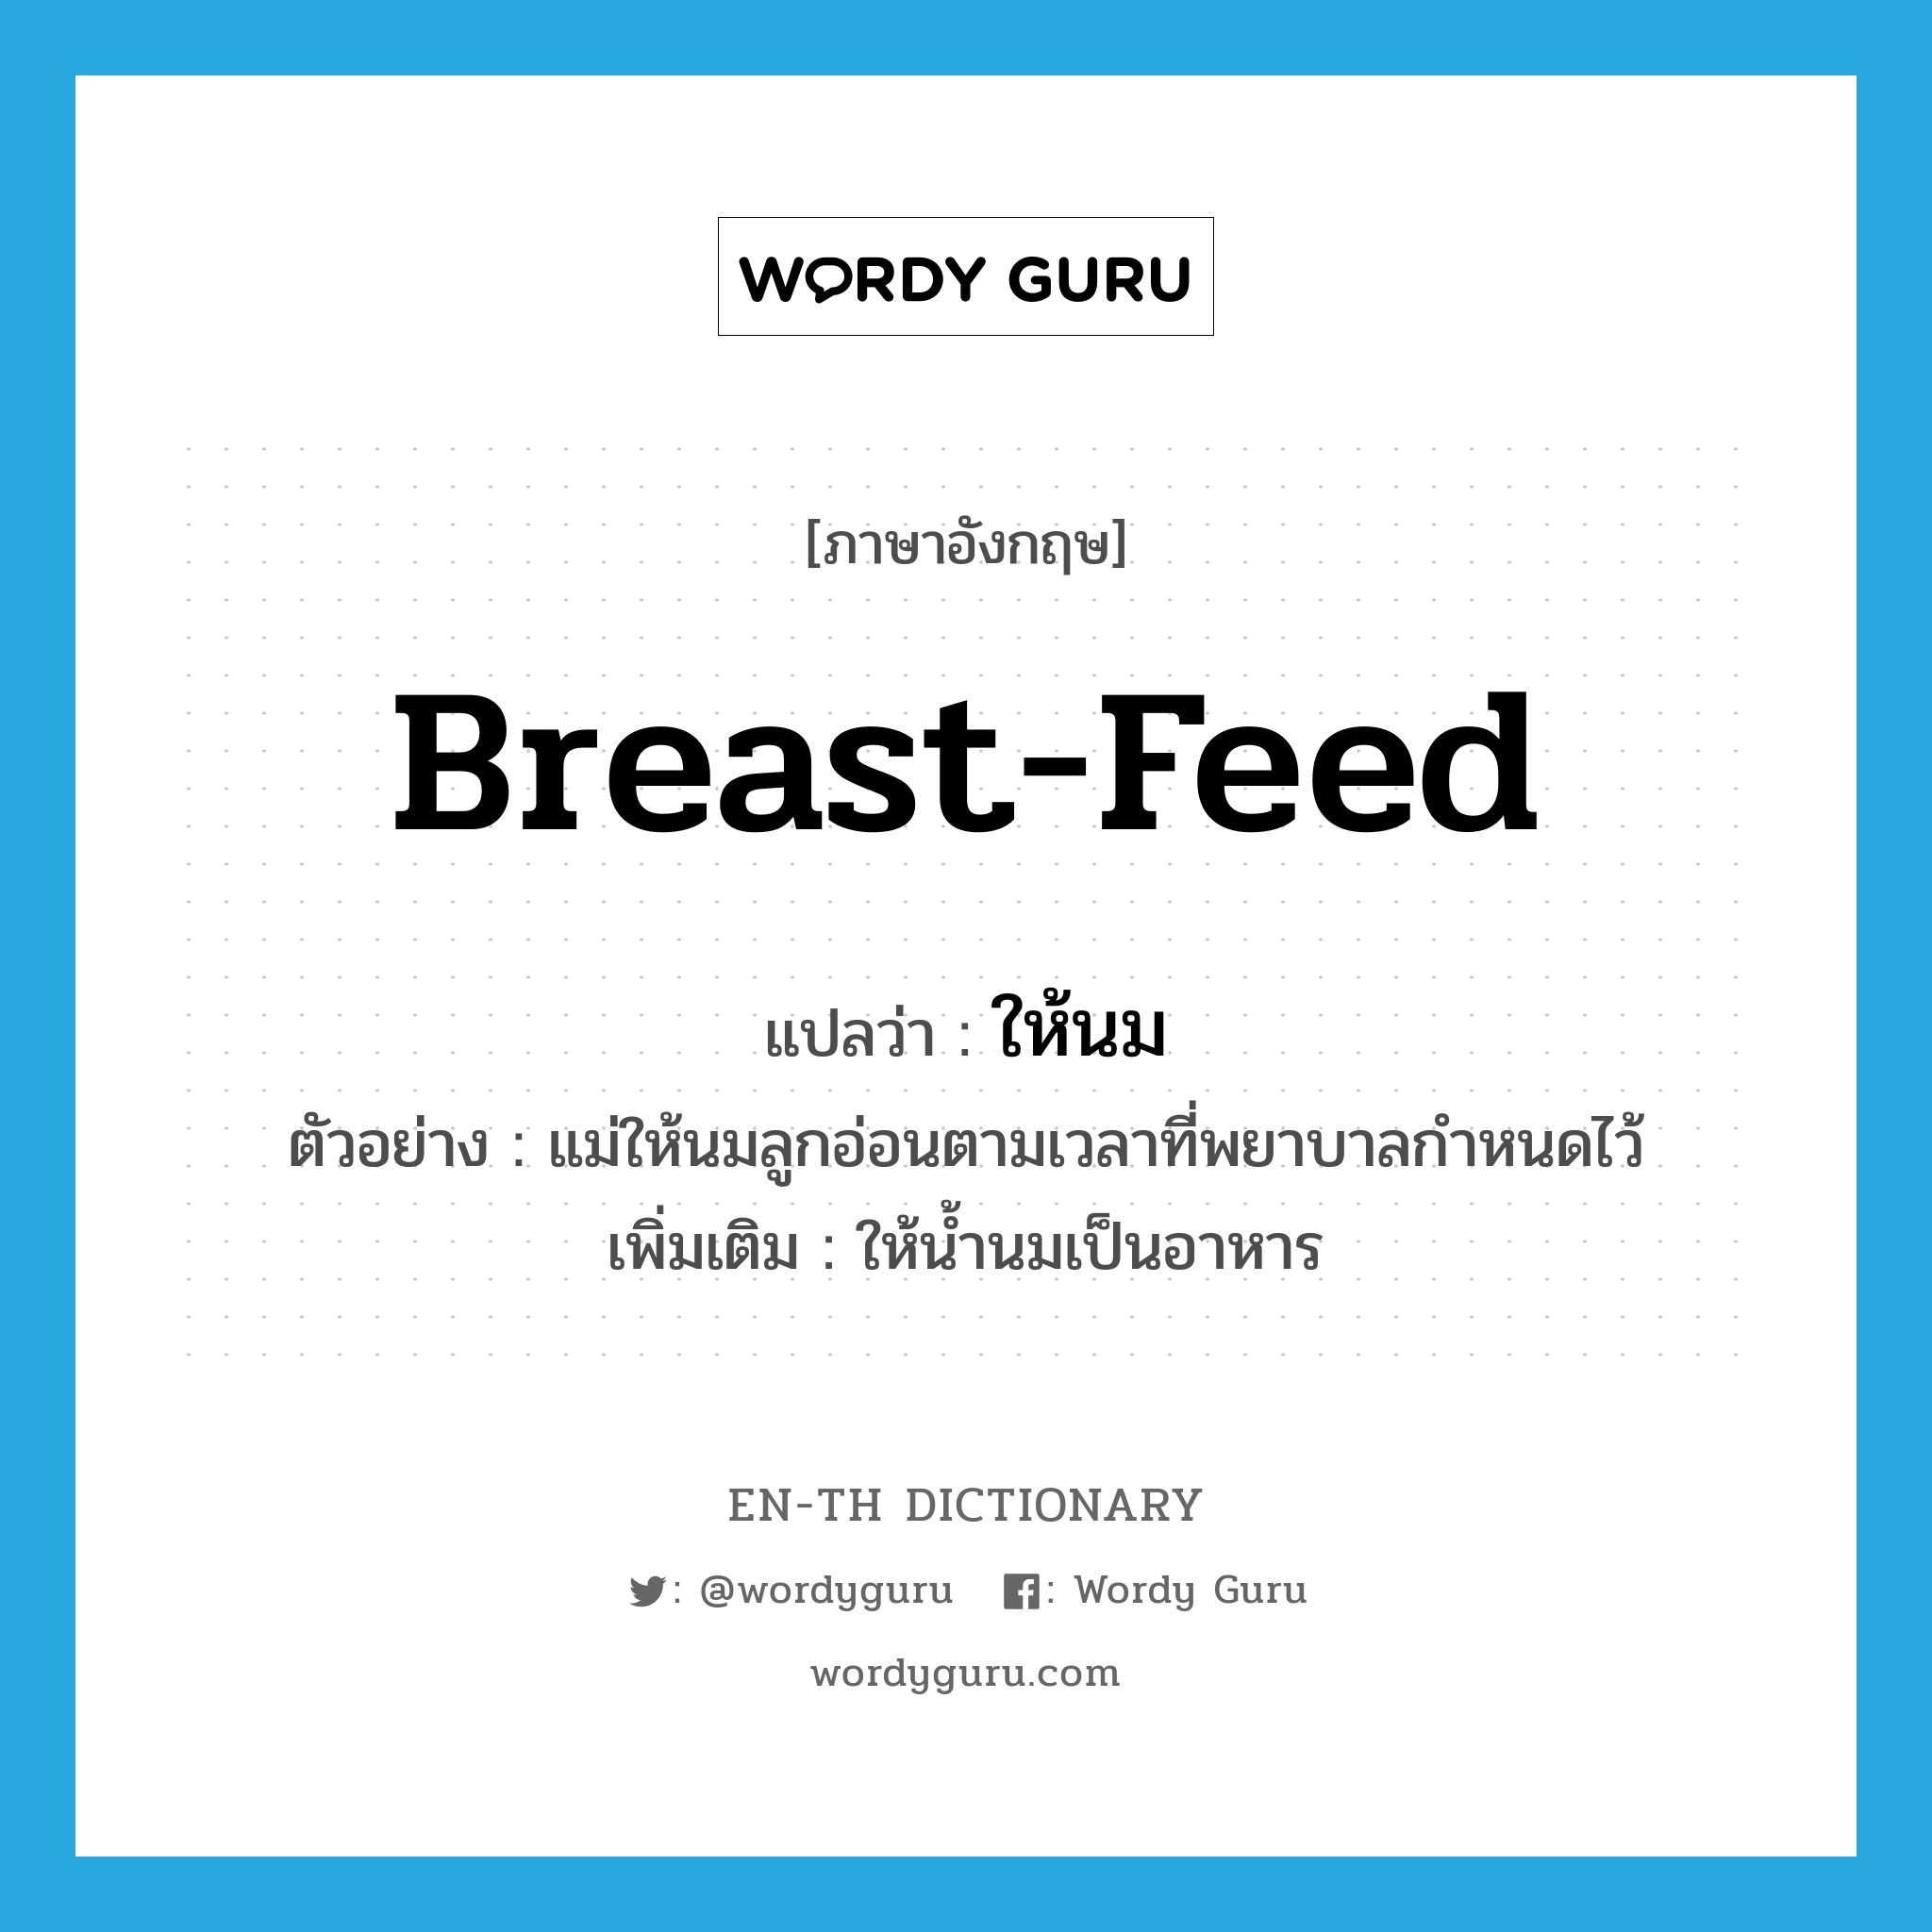 breast-feed แปลว่า?, คำศัพท์ภาษาอังกฤษ breast-feed แปลว่า ให้นม ประเภท V ตัวอย่าง แม่ให้นมลูกอ่อนตามเวลาที่พยาบาลกำหนดไว้ เพิ่มเติม ให้น้ำนมเป็นอาหาร หมวด V